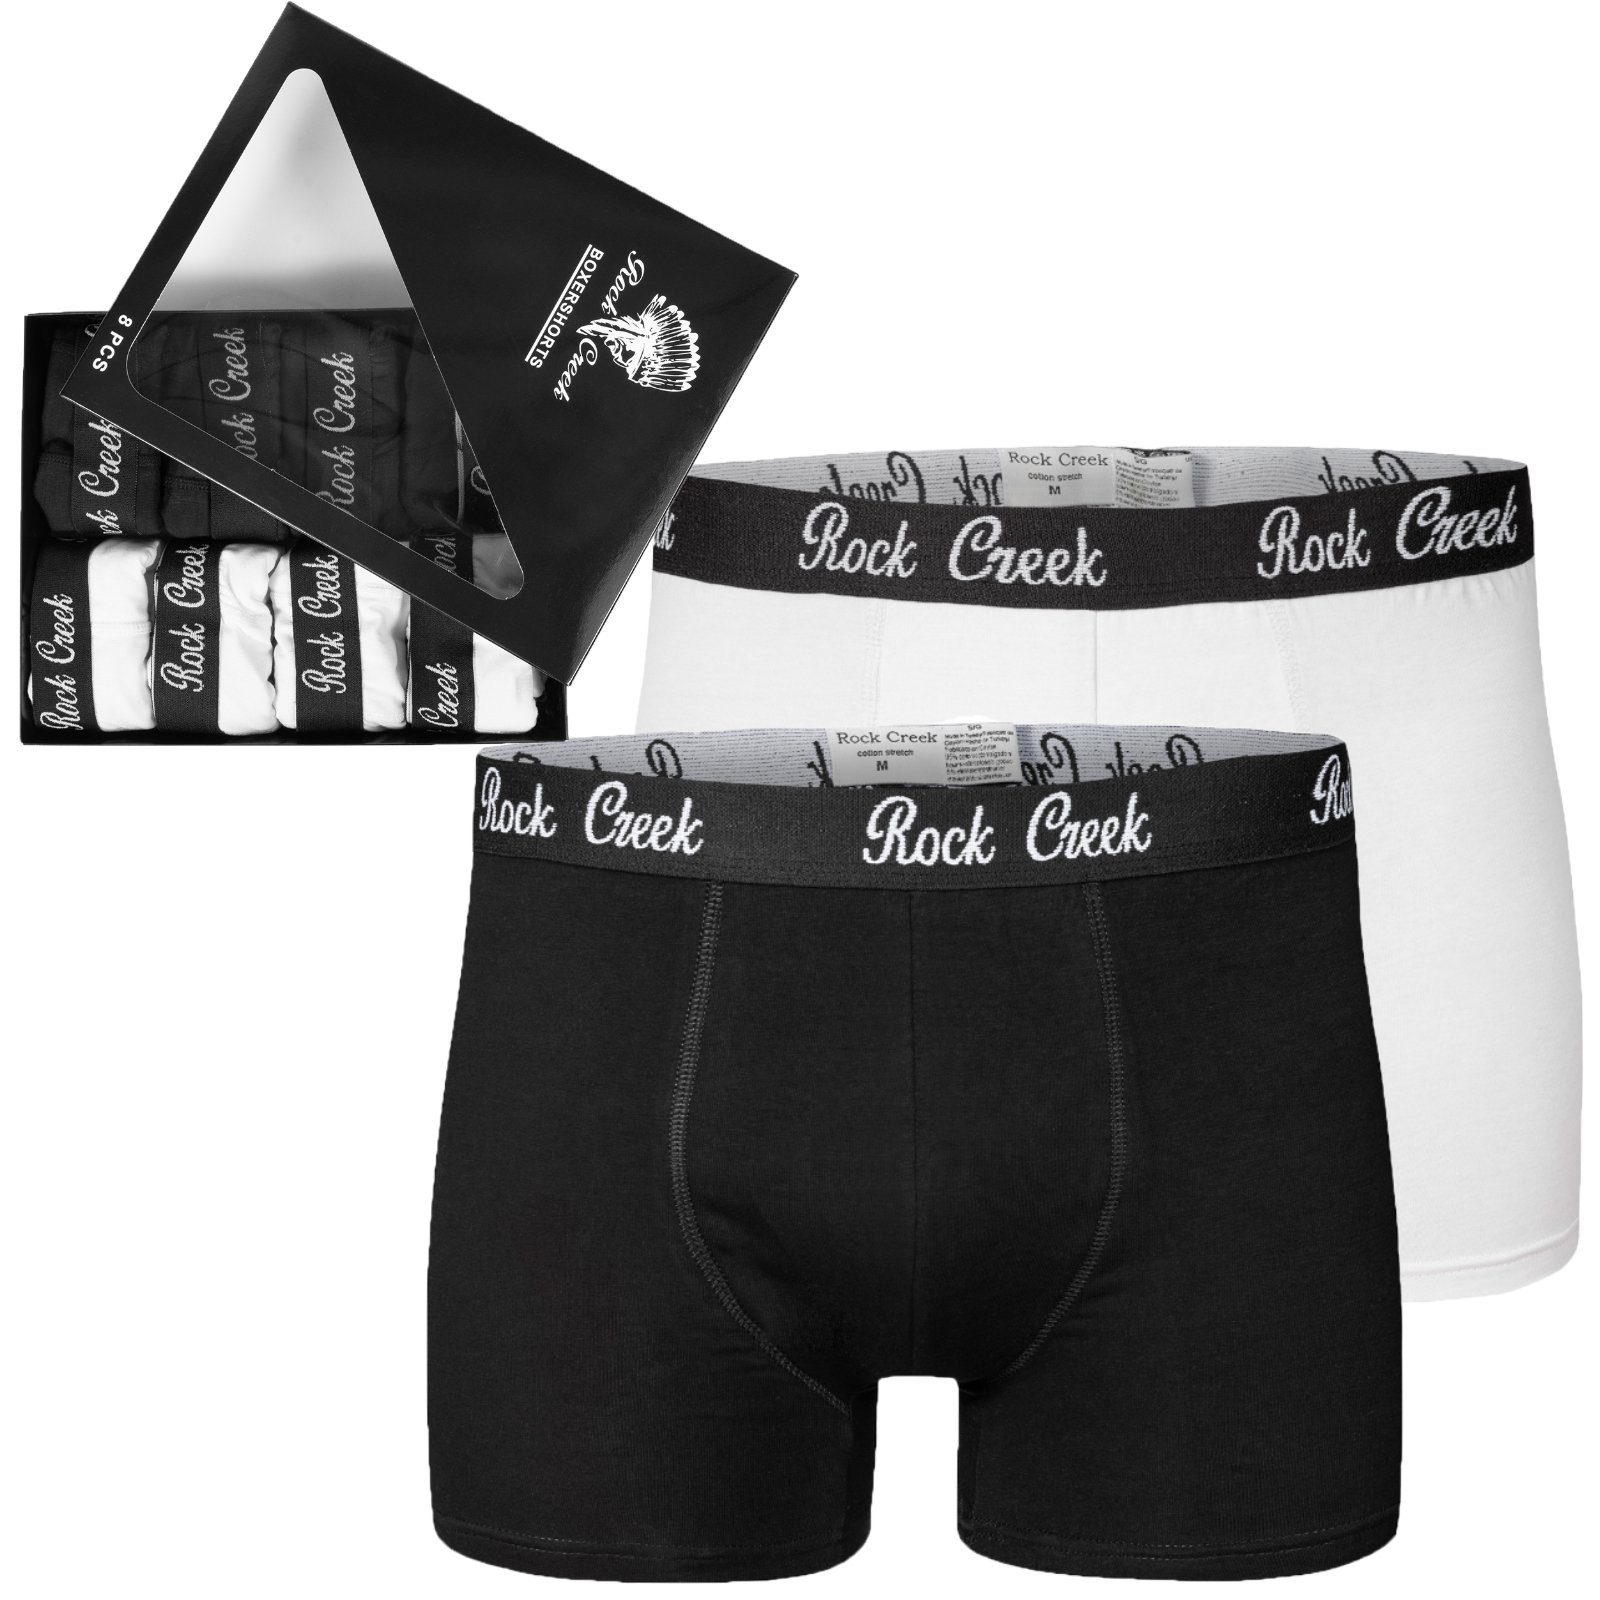 Rock Creek Boxershorts Herren Boxershorts 8er Set Schwarz und Weiß H-218 schwarz | weiß